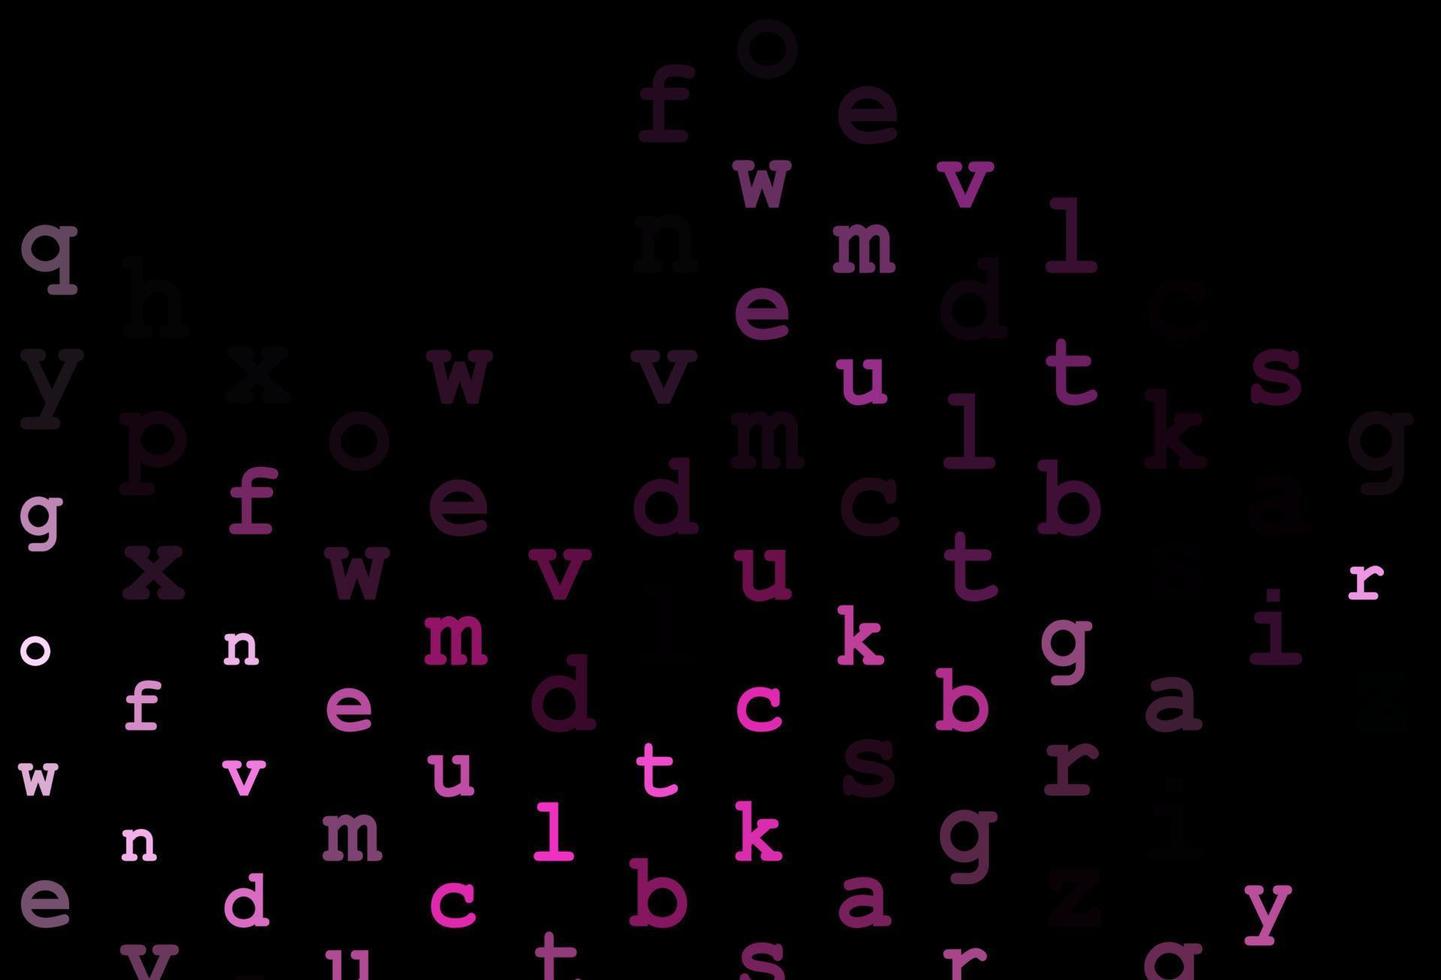 cubierta de vector de color rosa oscuro con símbolos en inglés.